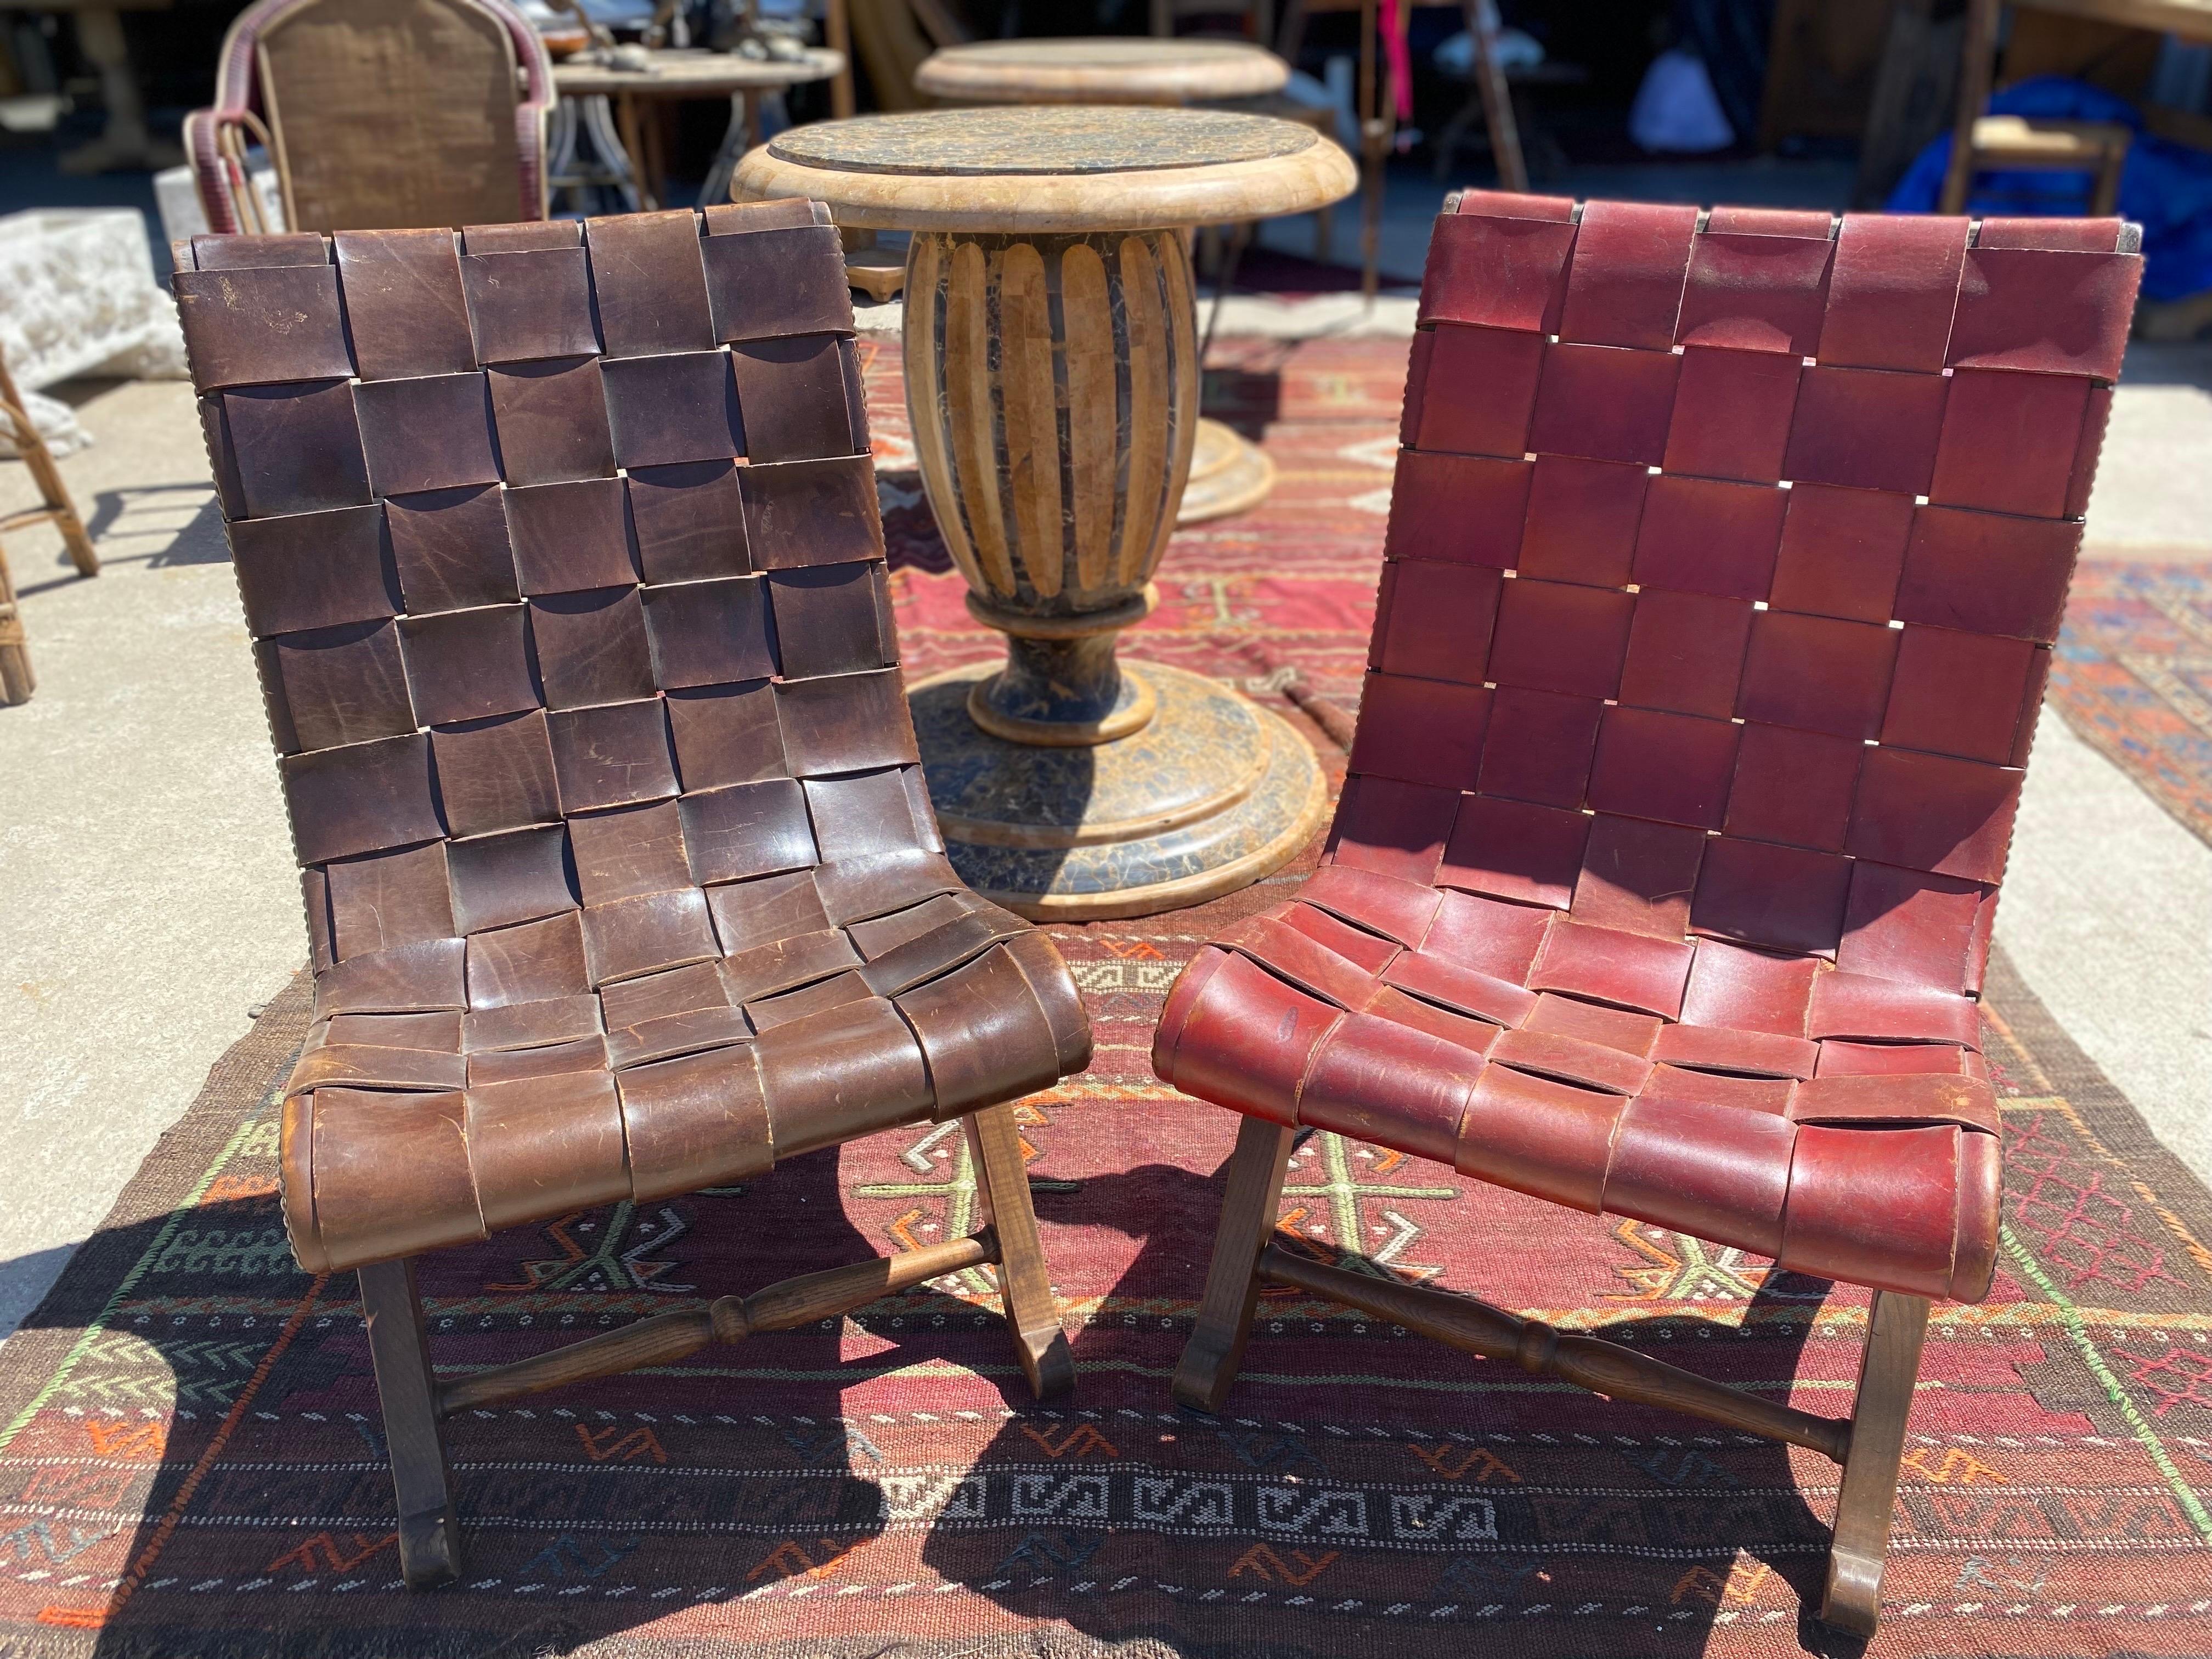 Paire de fauteuils en cuir épais PIerre Lottier, néoclassique, du milieu du siècle, vers les années 1950, Espagne. L'une des chaises est d'une riche couleur brune et l'autre d'une couleur bordeaux, toutes deux ont une belle patine naturelle